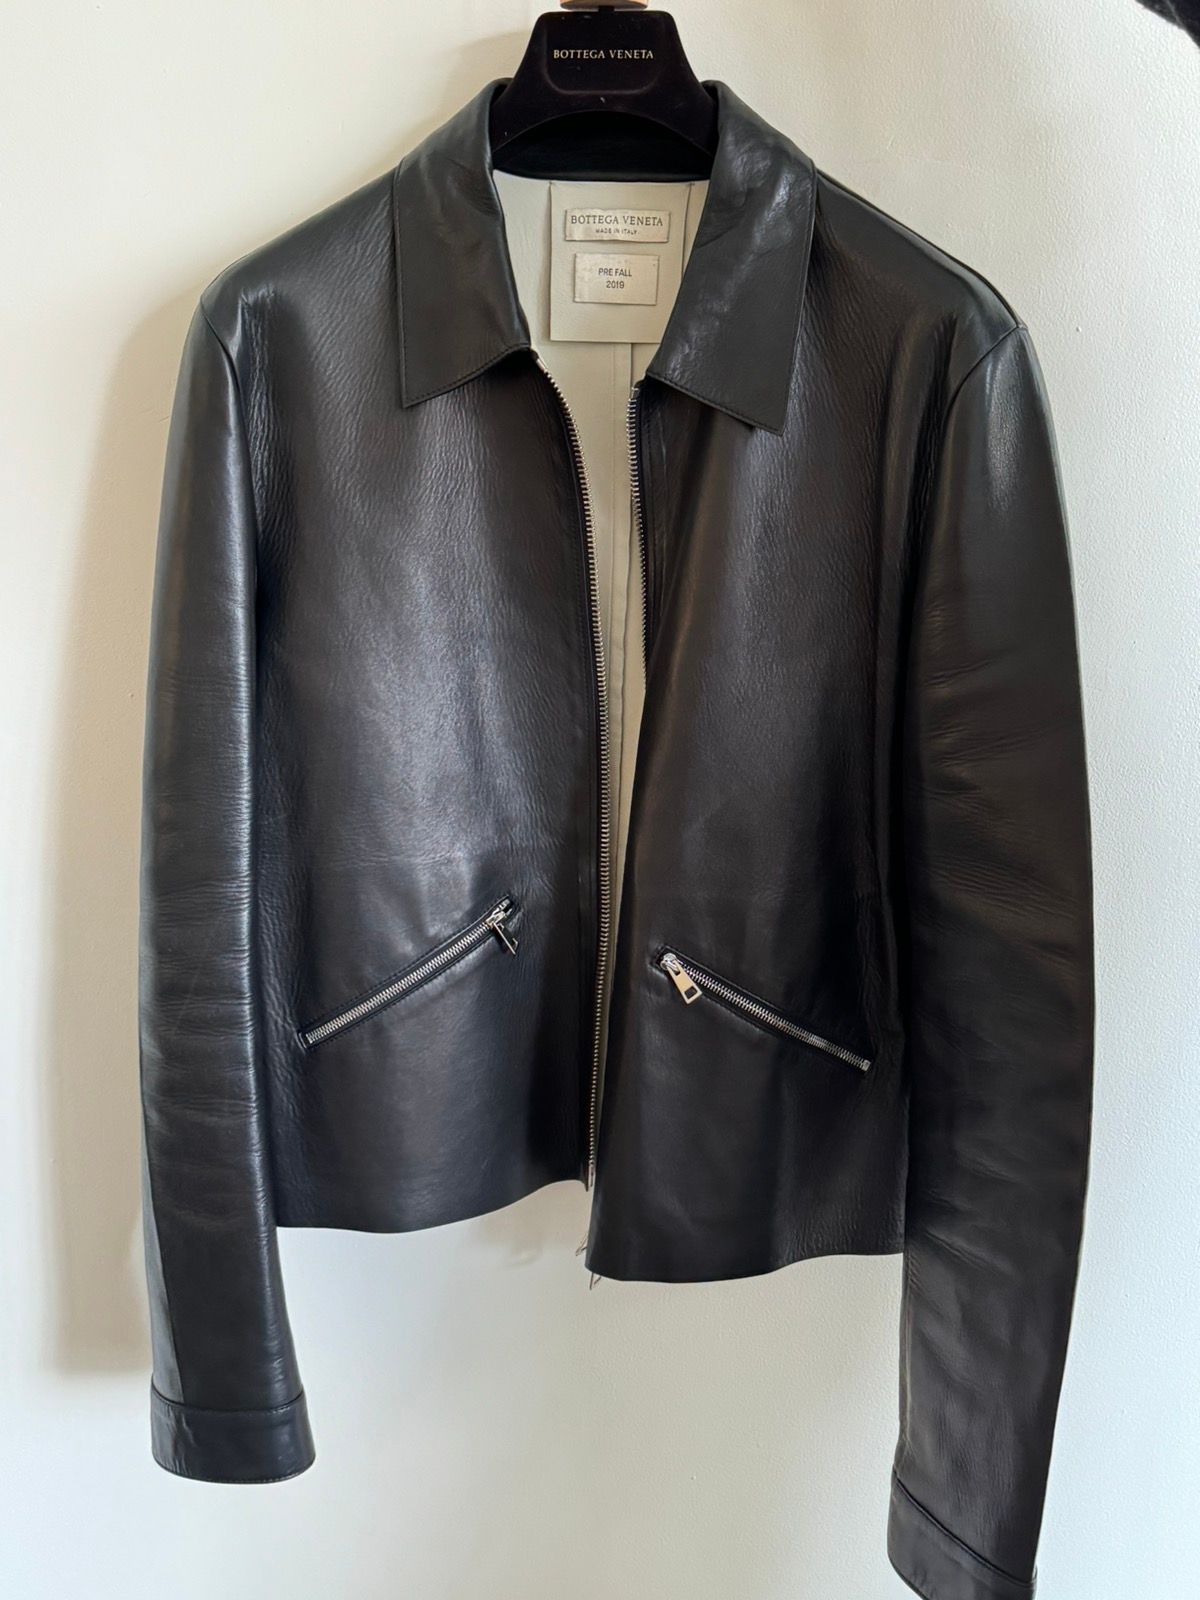 Pre-owned Bottega Veneta Pre-fall 2019 Leather Bonded Jacket In Black